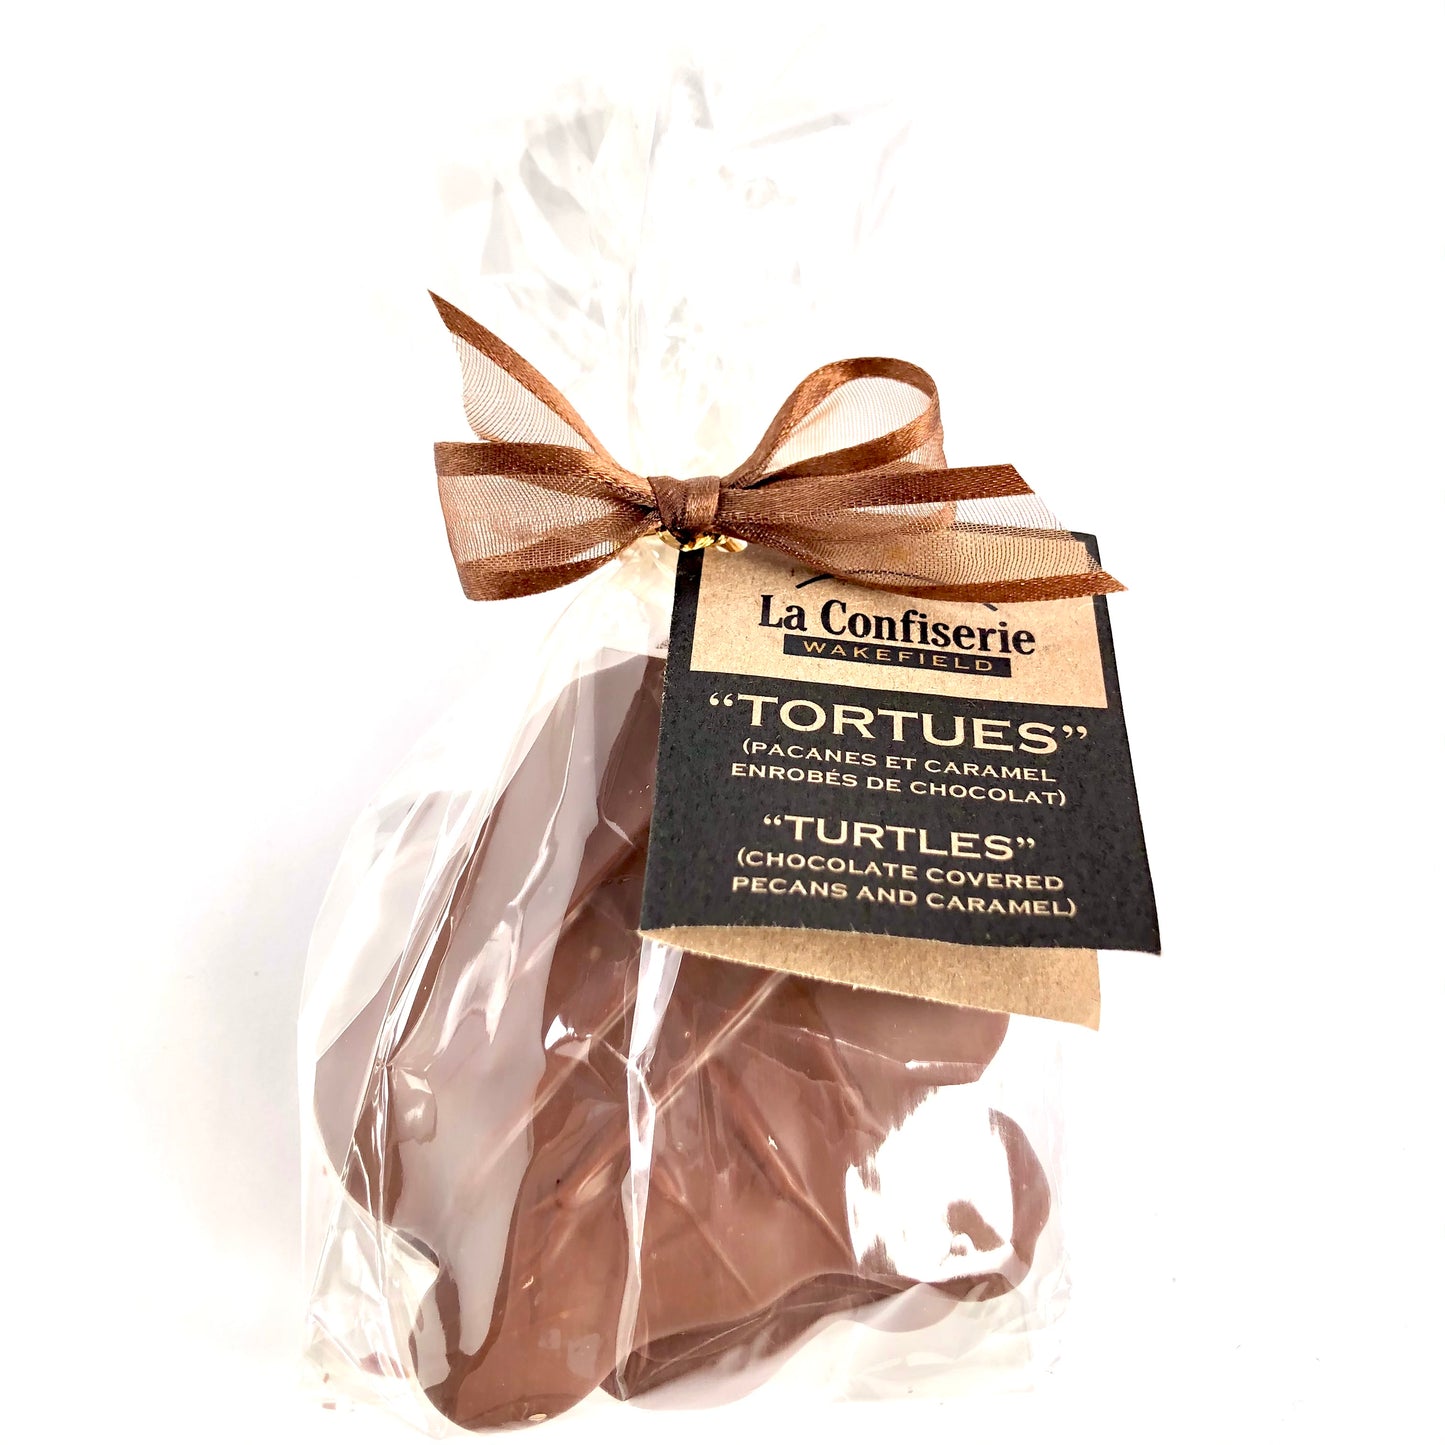 "Tortues" - Caramel et pacanes enrobés de chocolat